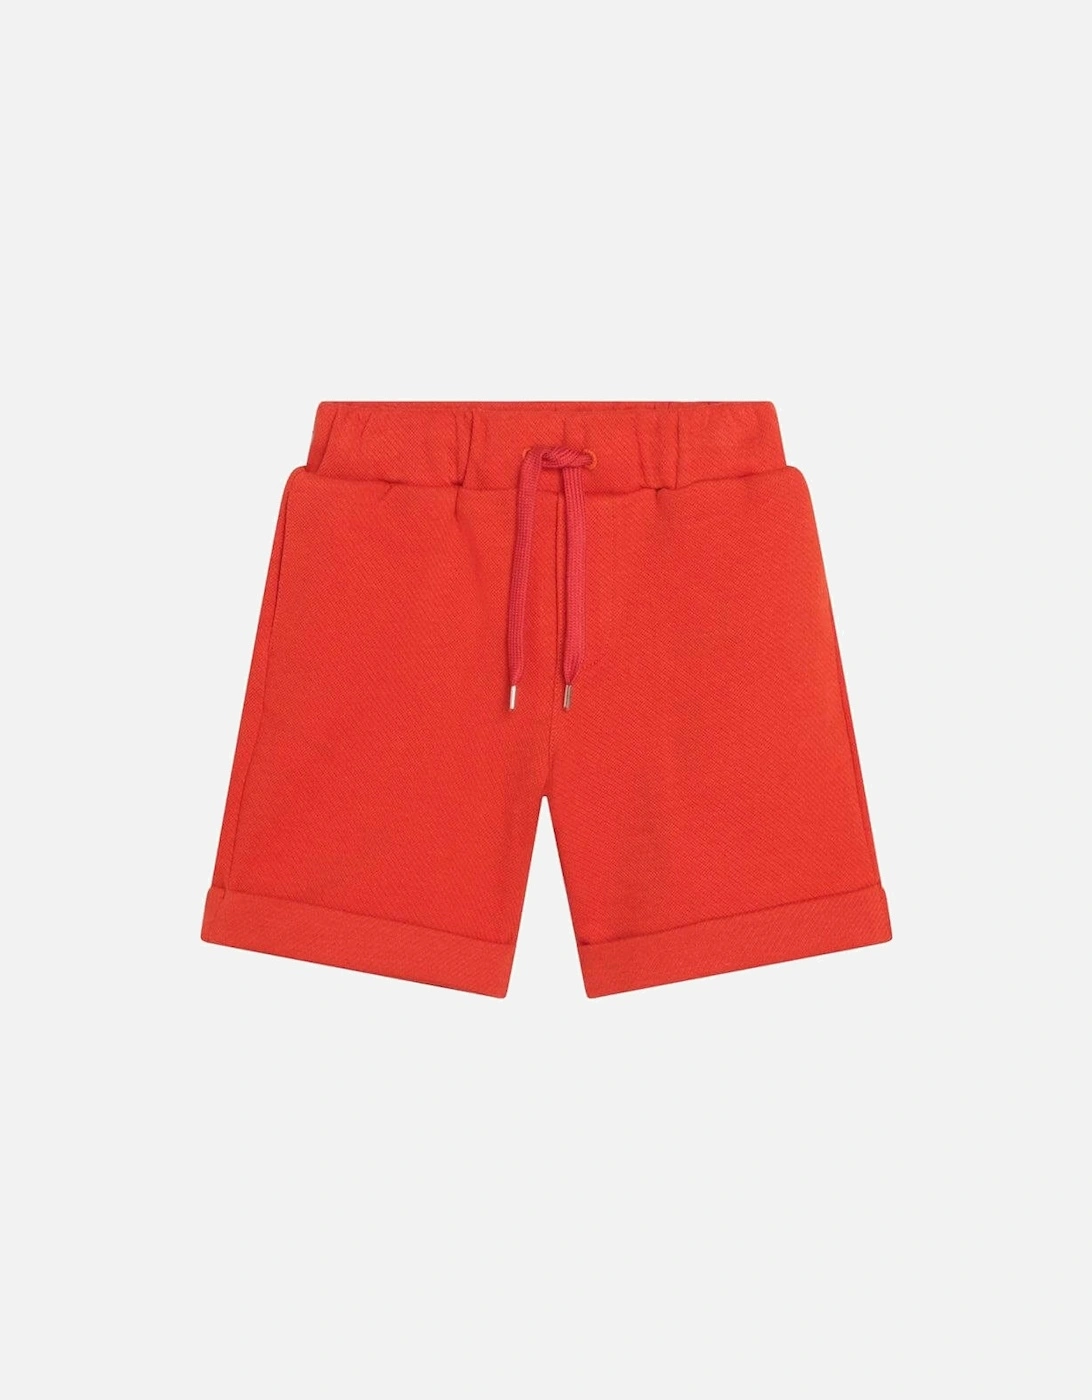 Boys Orange Jersey Shorts, 4 of 3